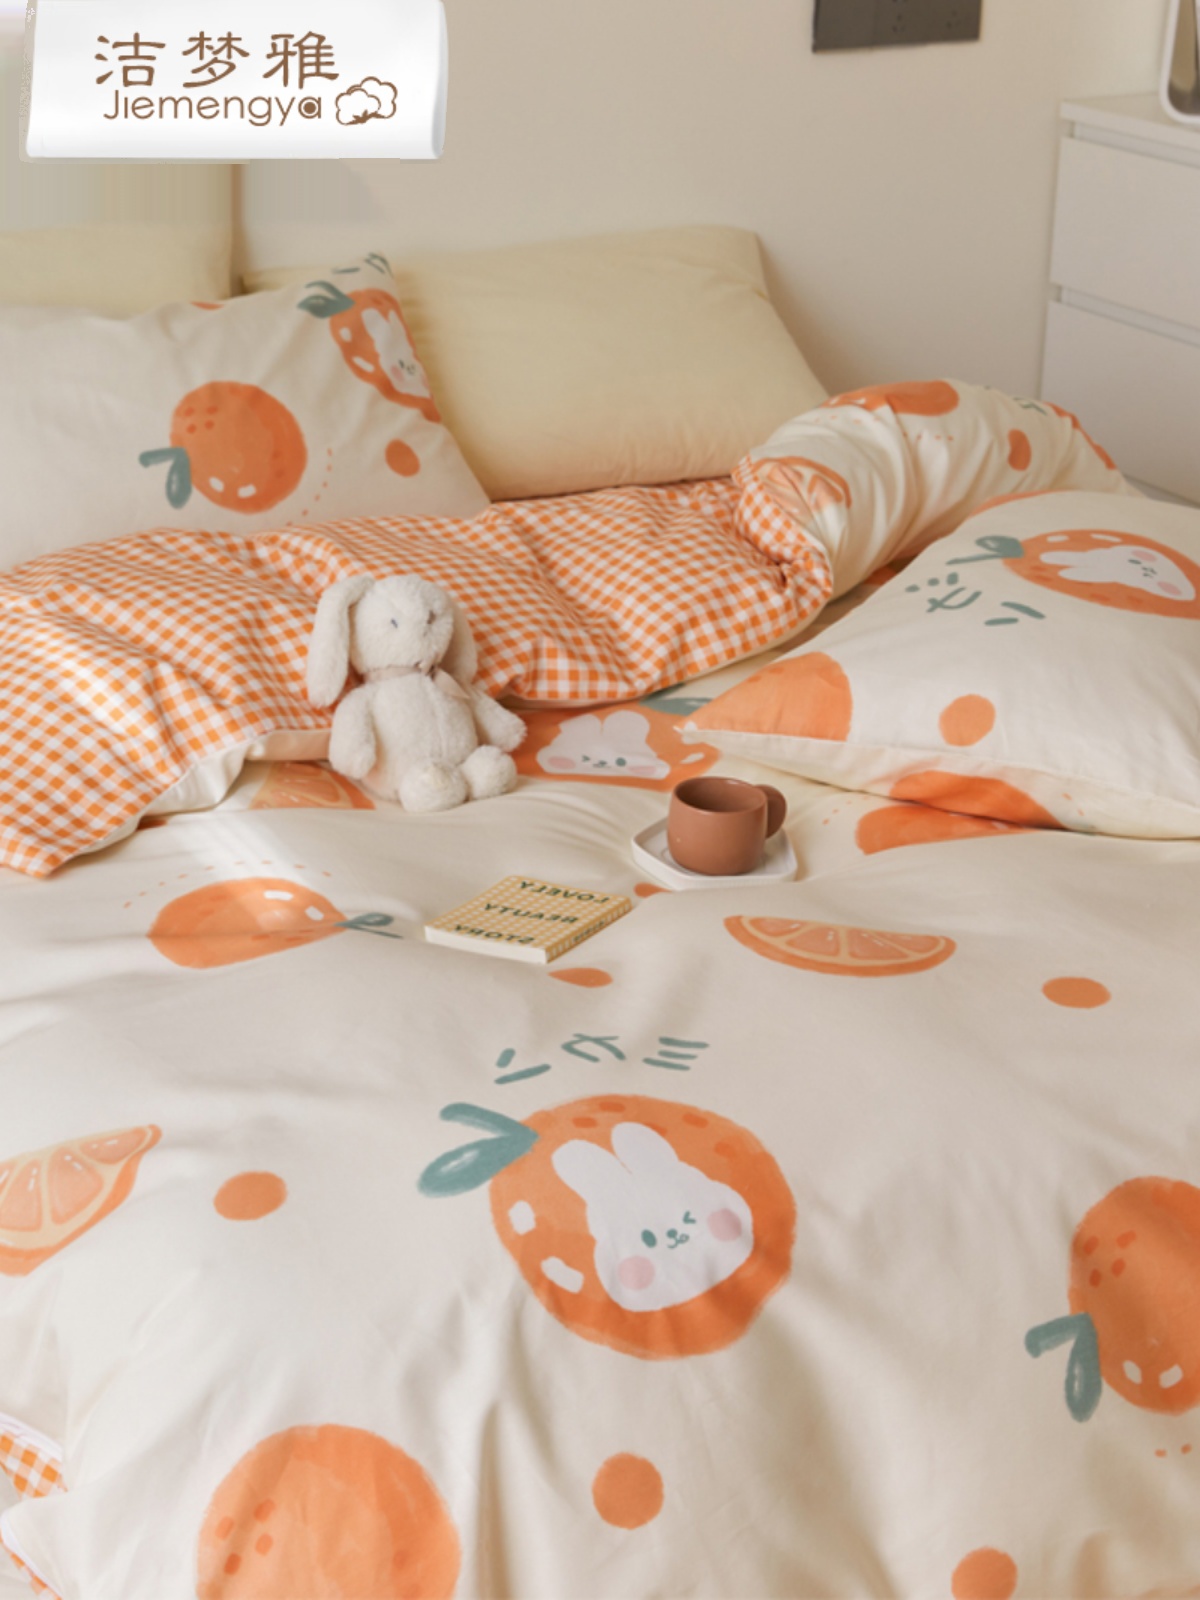 韓式風兒童卡通床單四件套純棉材質溫暖舒適床品工藝精緻讓孩子睡得安心 (4.6折)